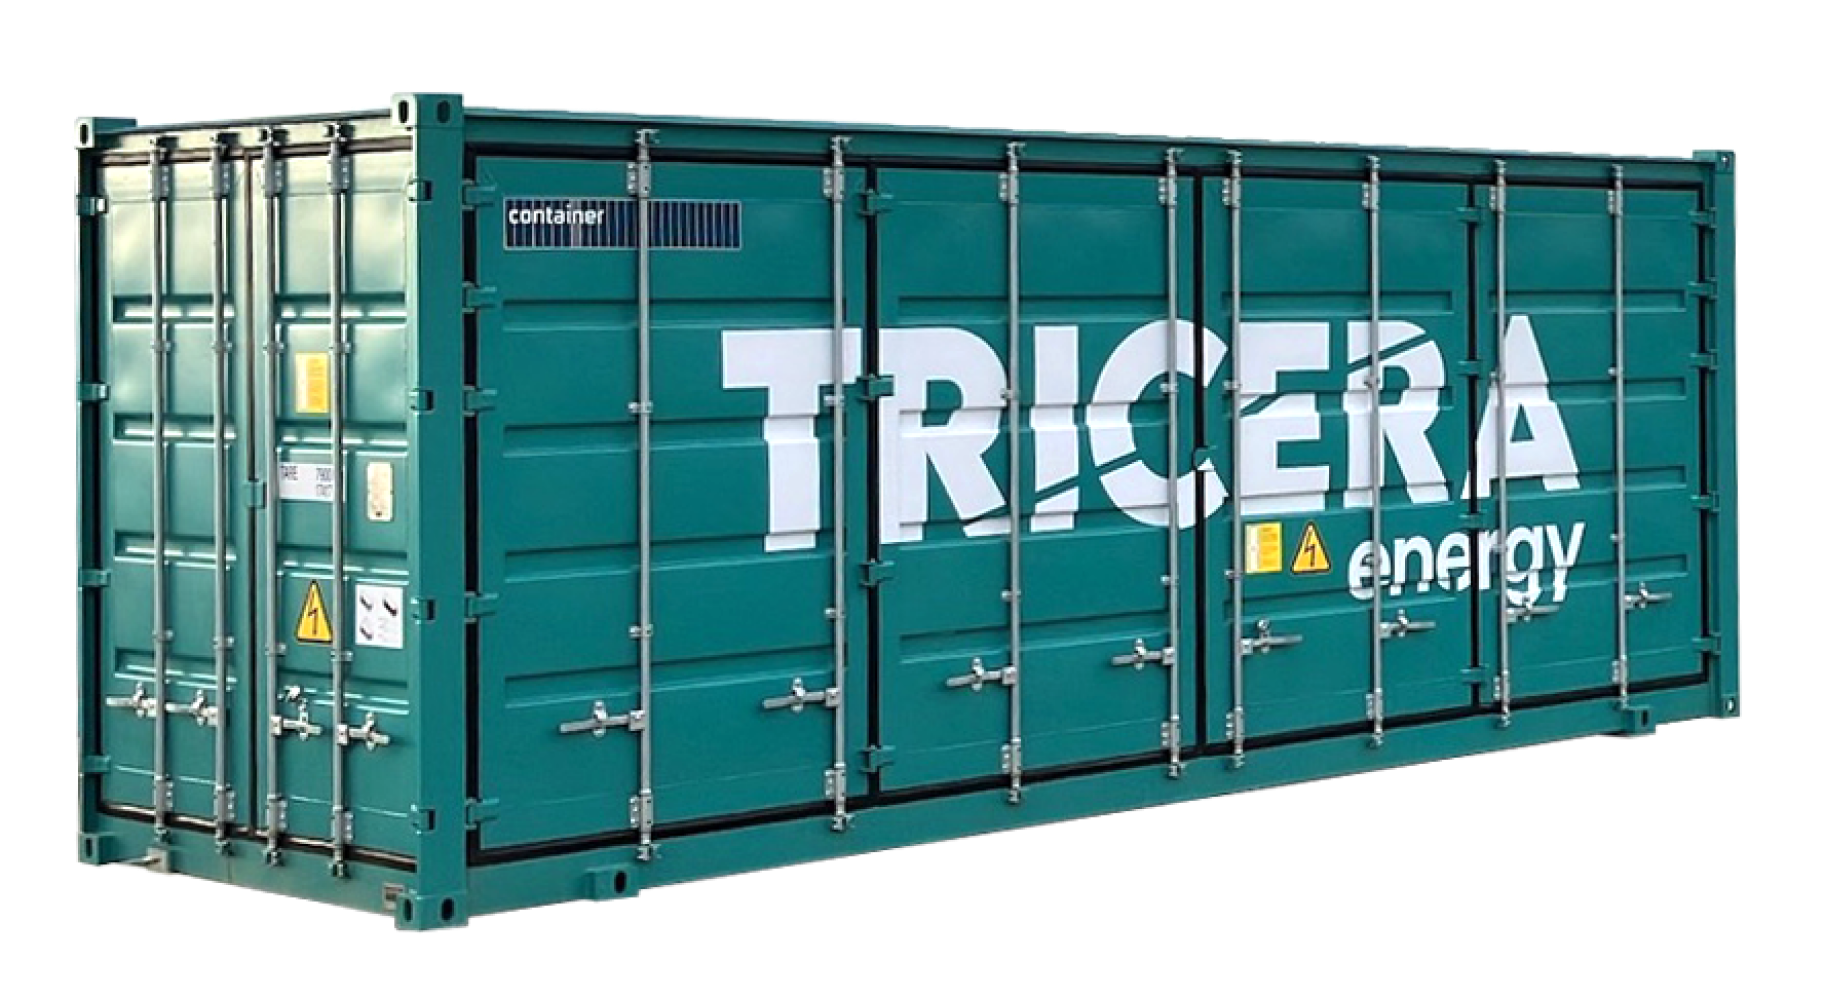 Ein grüner Container mit der Aufschrift "TRICERA energy"